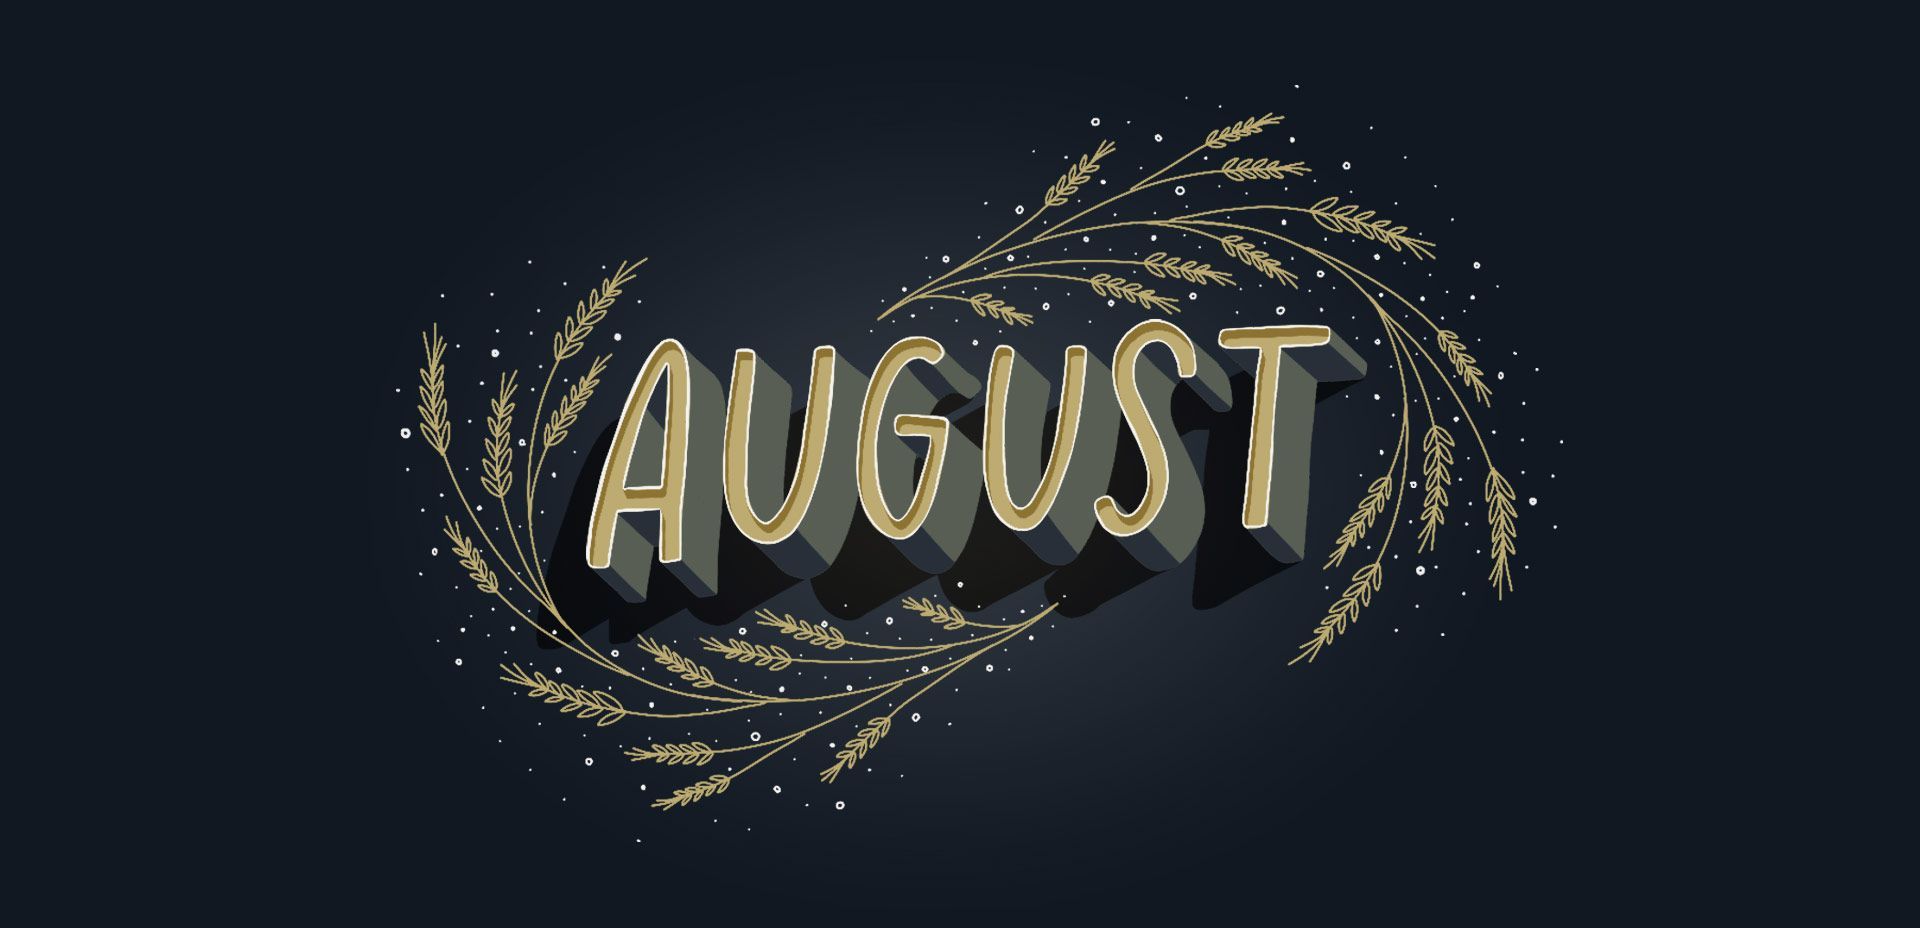 Freebie: August 2018 Desktop Wallpaper